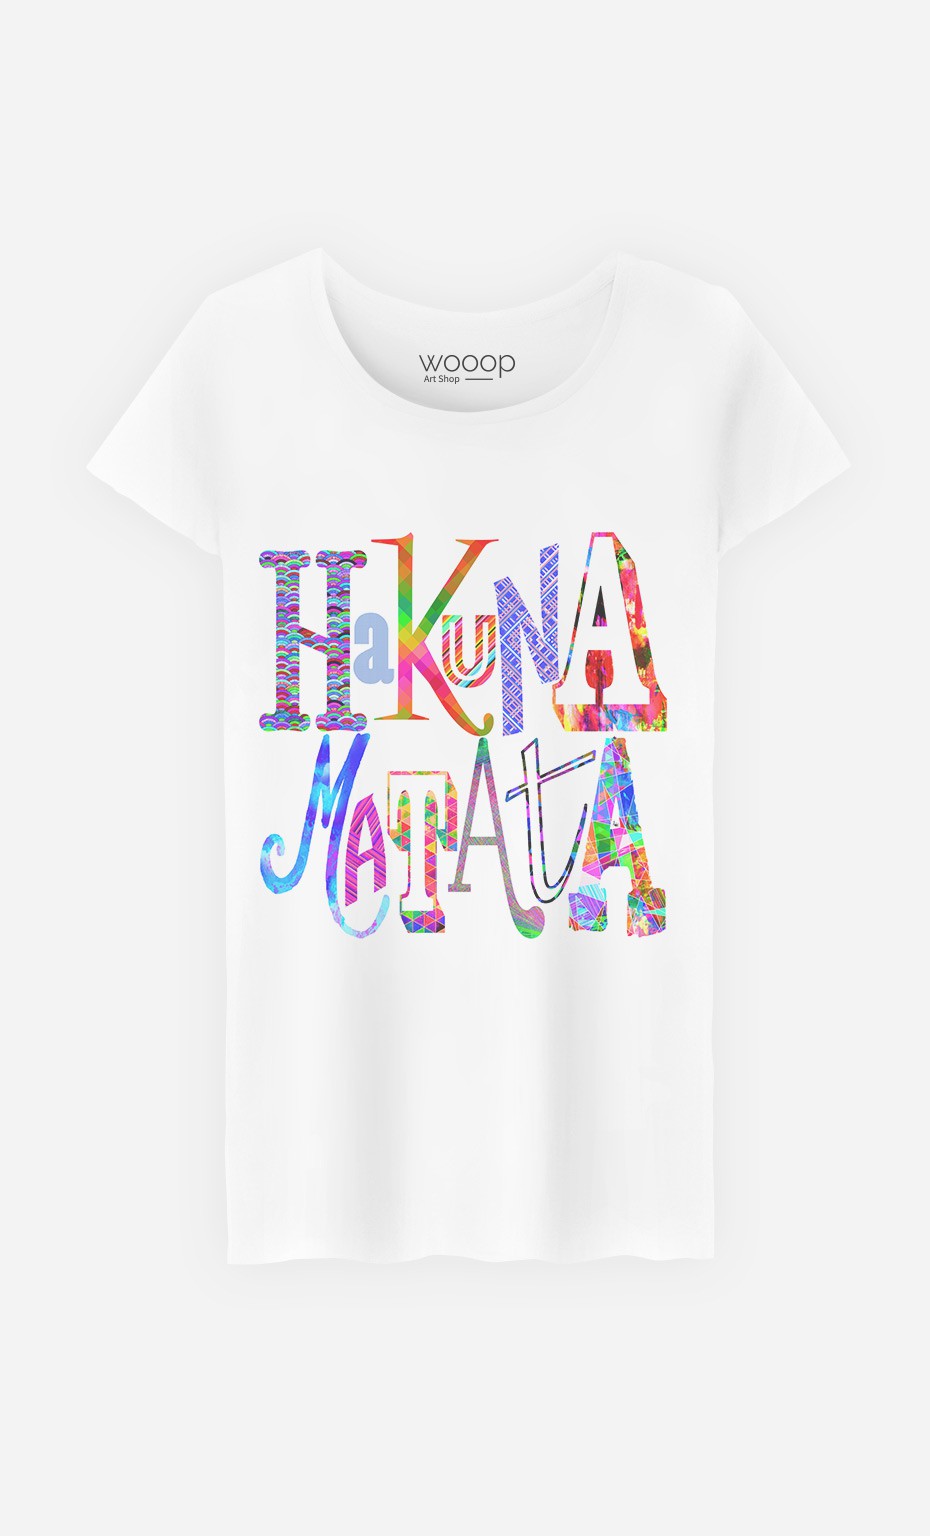 T-Shirt Hakuna Matata Color